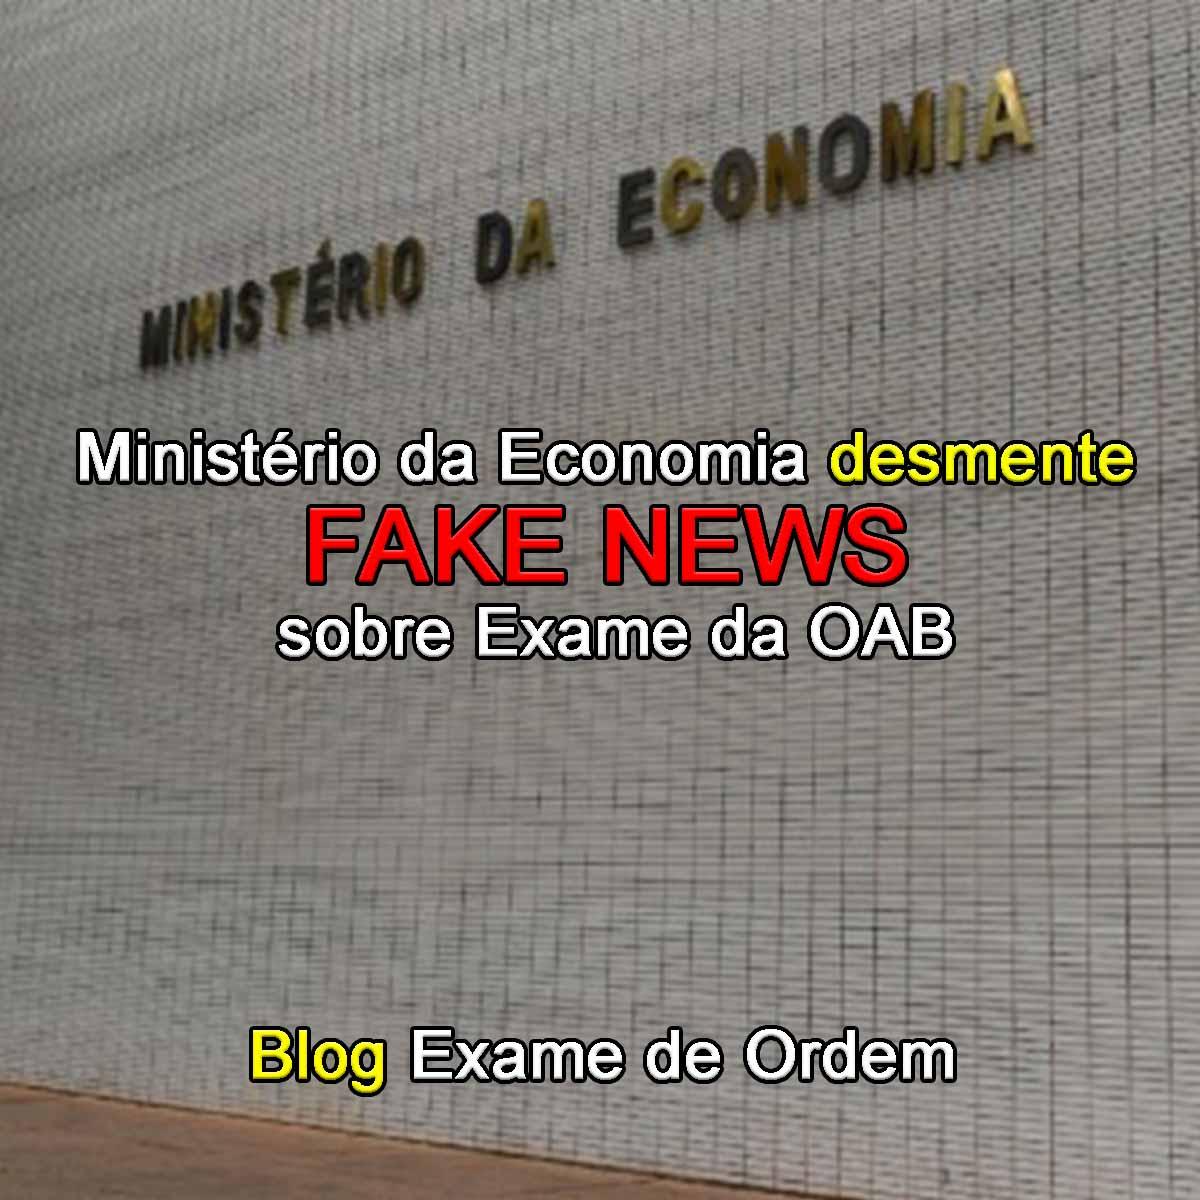 Ministério da Economia desmente fake news sobre Exame da OAB